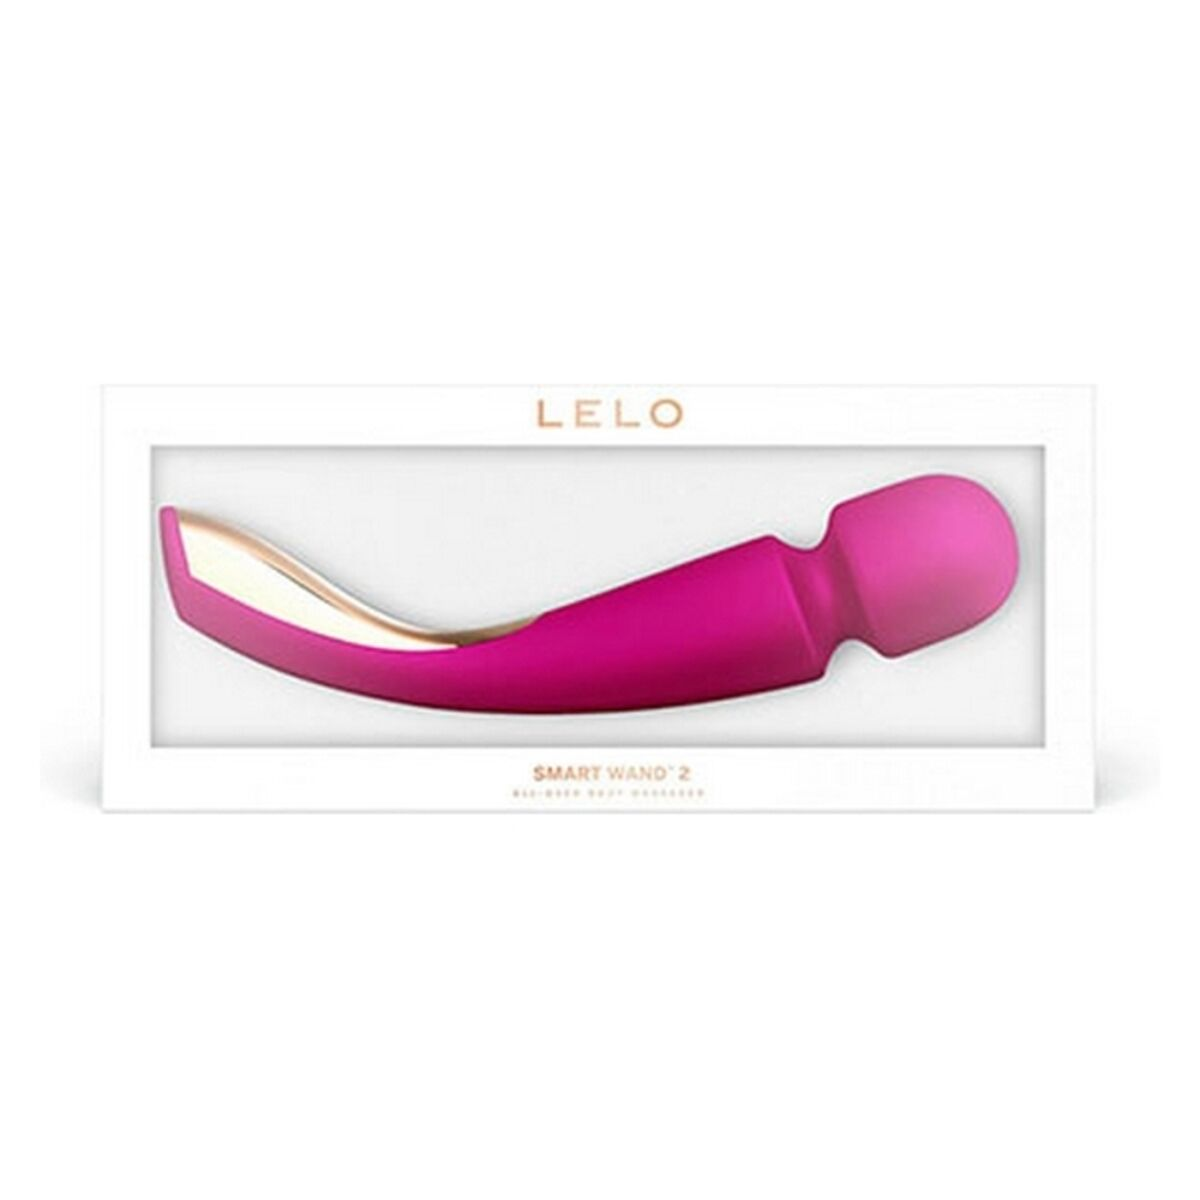 LELO LELO Smart Wand 2 - Groß - Pink wand-massager